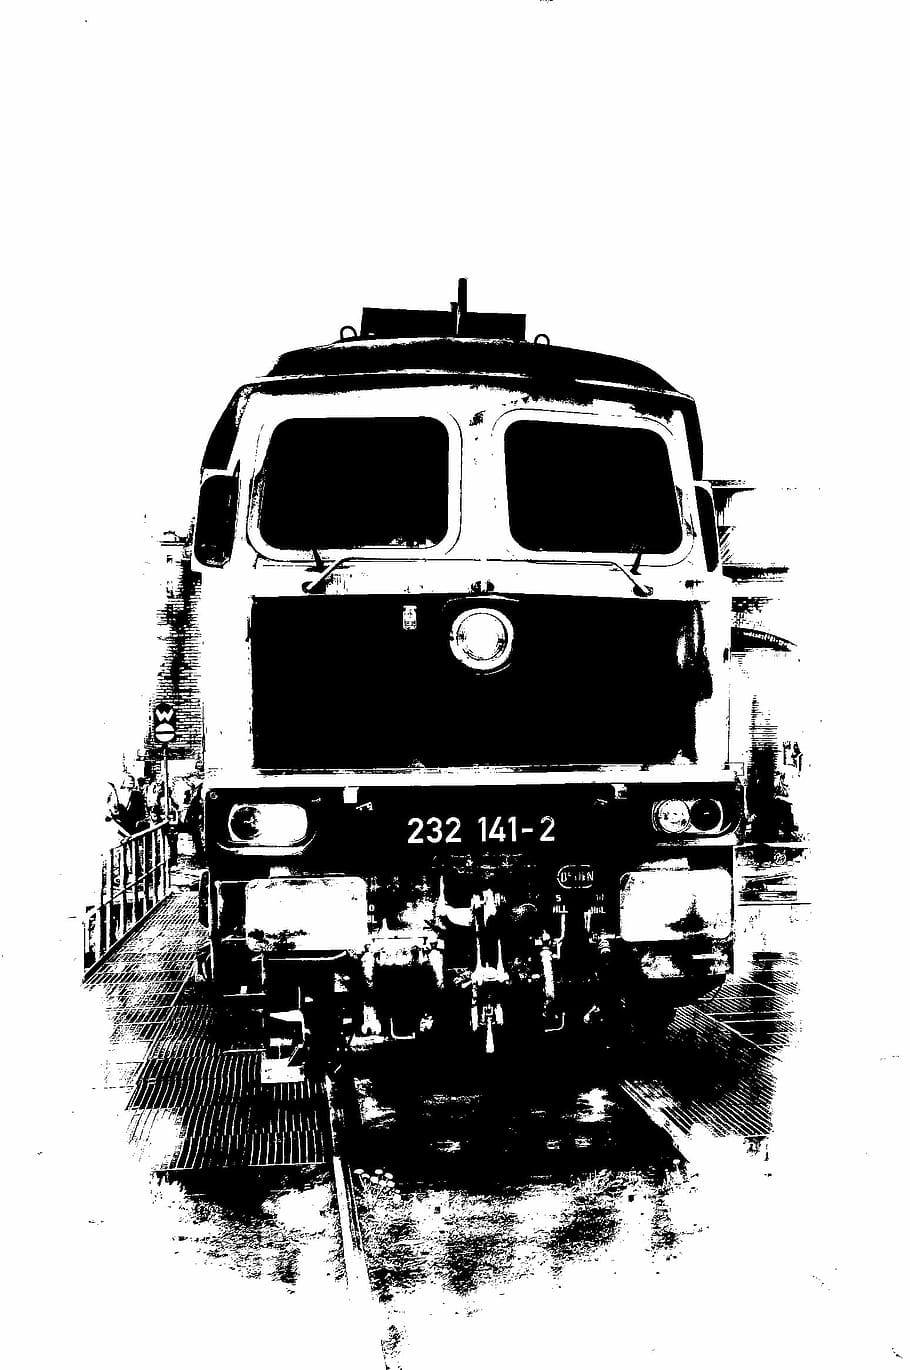 Locomotora diésel, monocromo, ferrocarril, transporte, tráfico ferroviario, tren, vehículos, medios de transporte público, blanco y negro, vía férrea